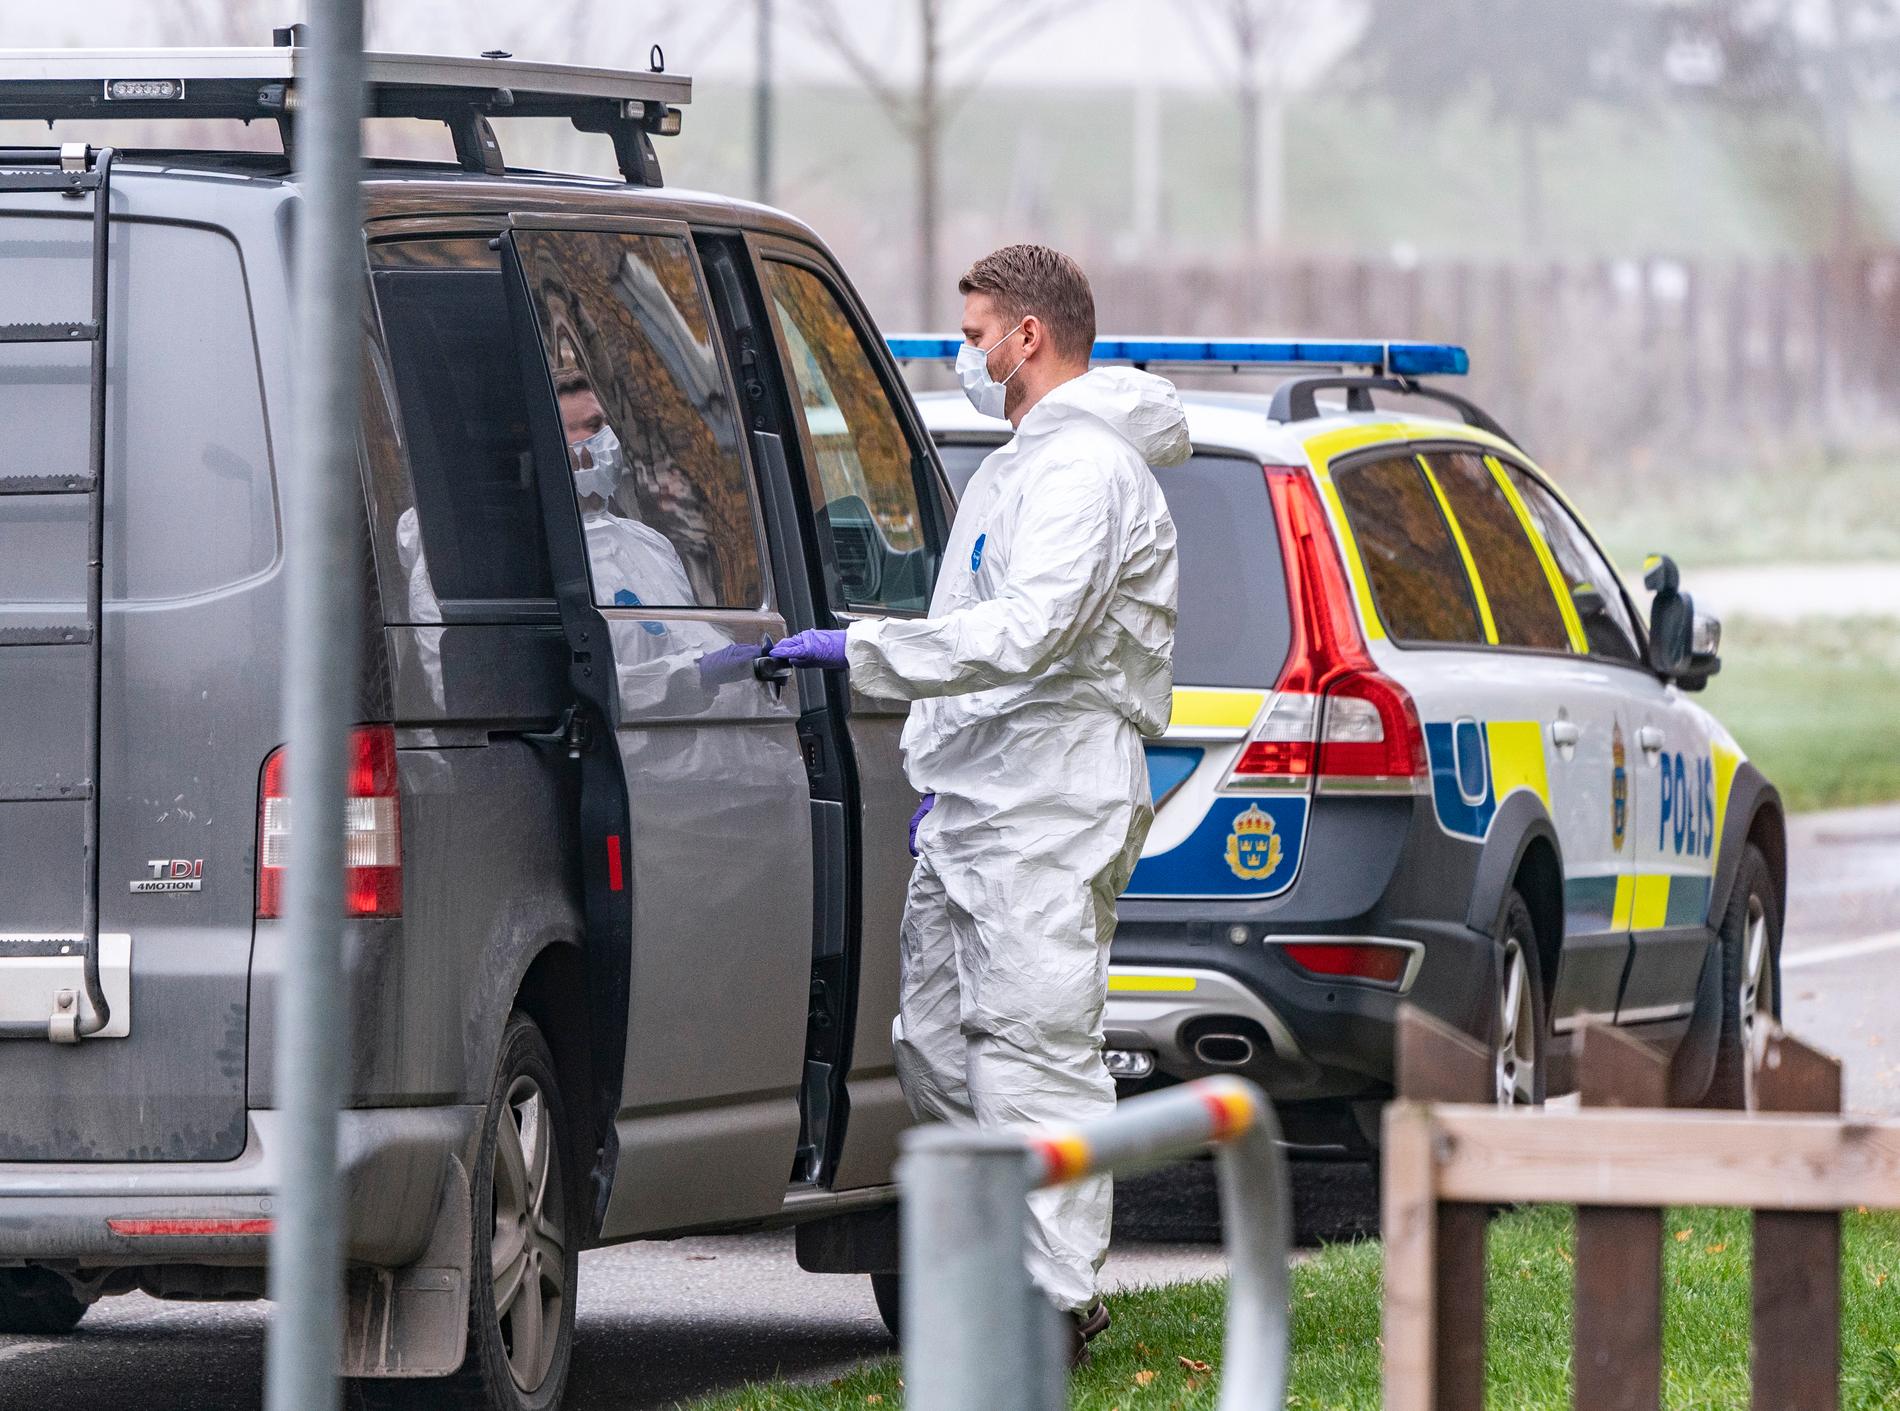 Polis och kriminaltekniker i Malmö utreder det misstänkta mordet i södra Malmö.